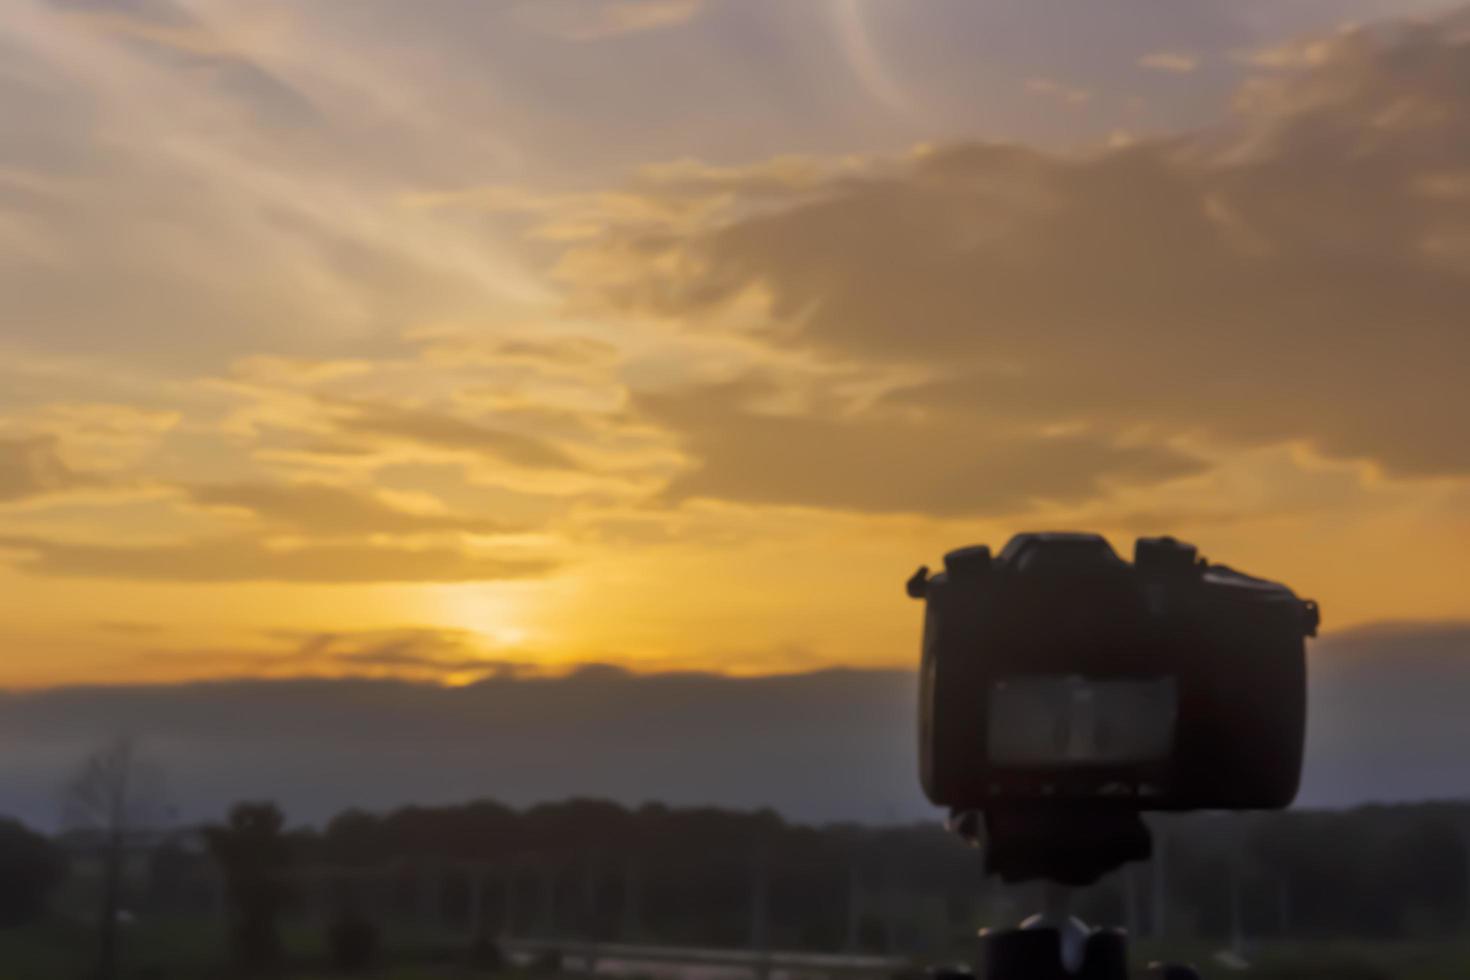 het concept van onscherpte, de camera maakt foto's van het landschap van schemering, lucht, zonsondergang, prachtige kleuren op de achtergrond. foto